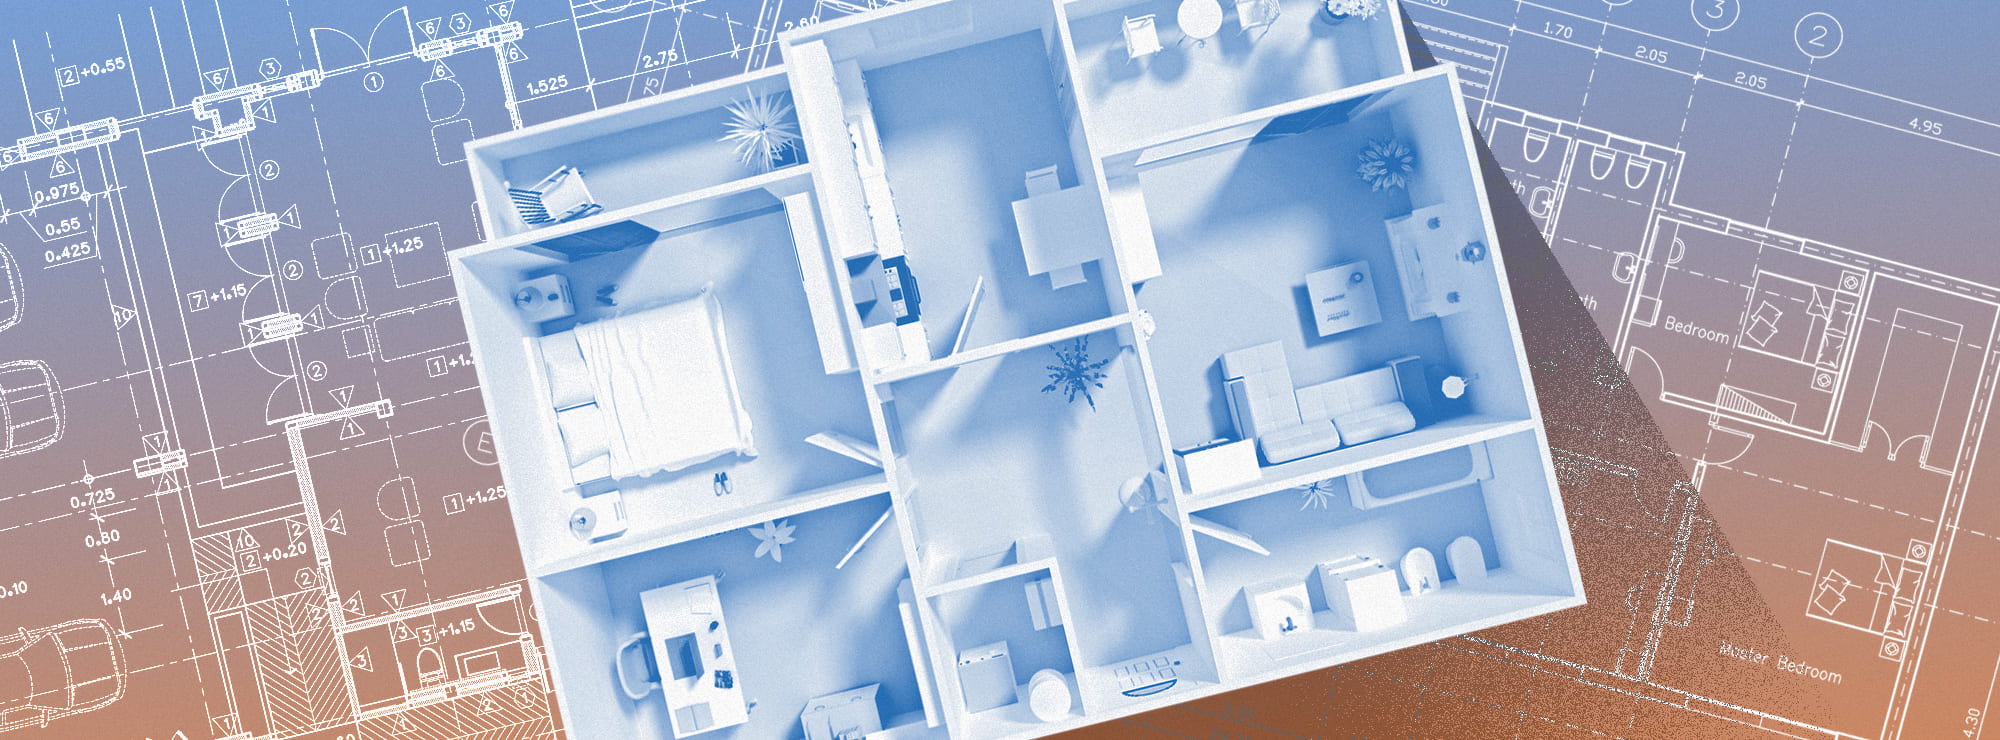 Полноразмерная обложка поста на тему: Как самостоятельно сделать замеры квартиры для дизайн-проекта